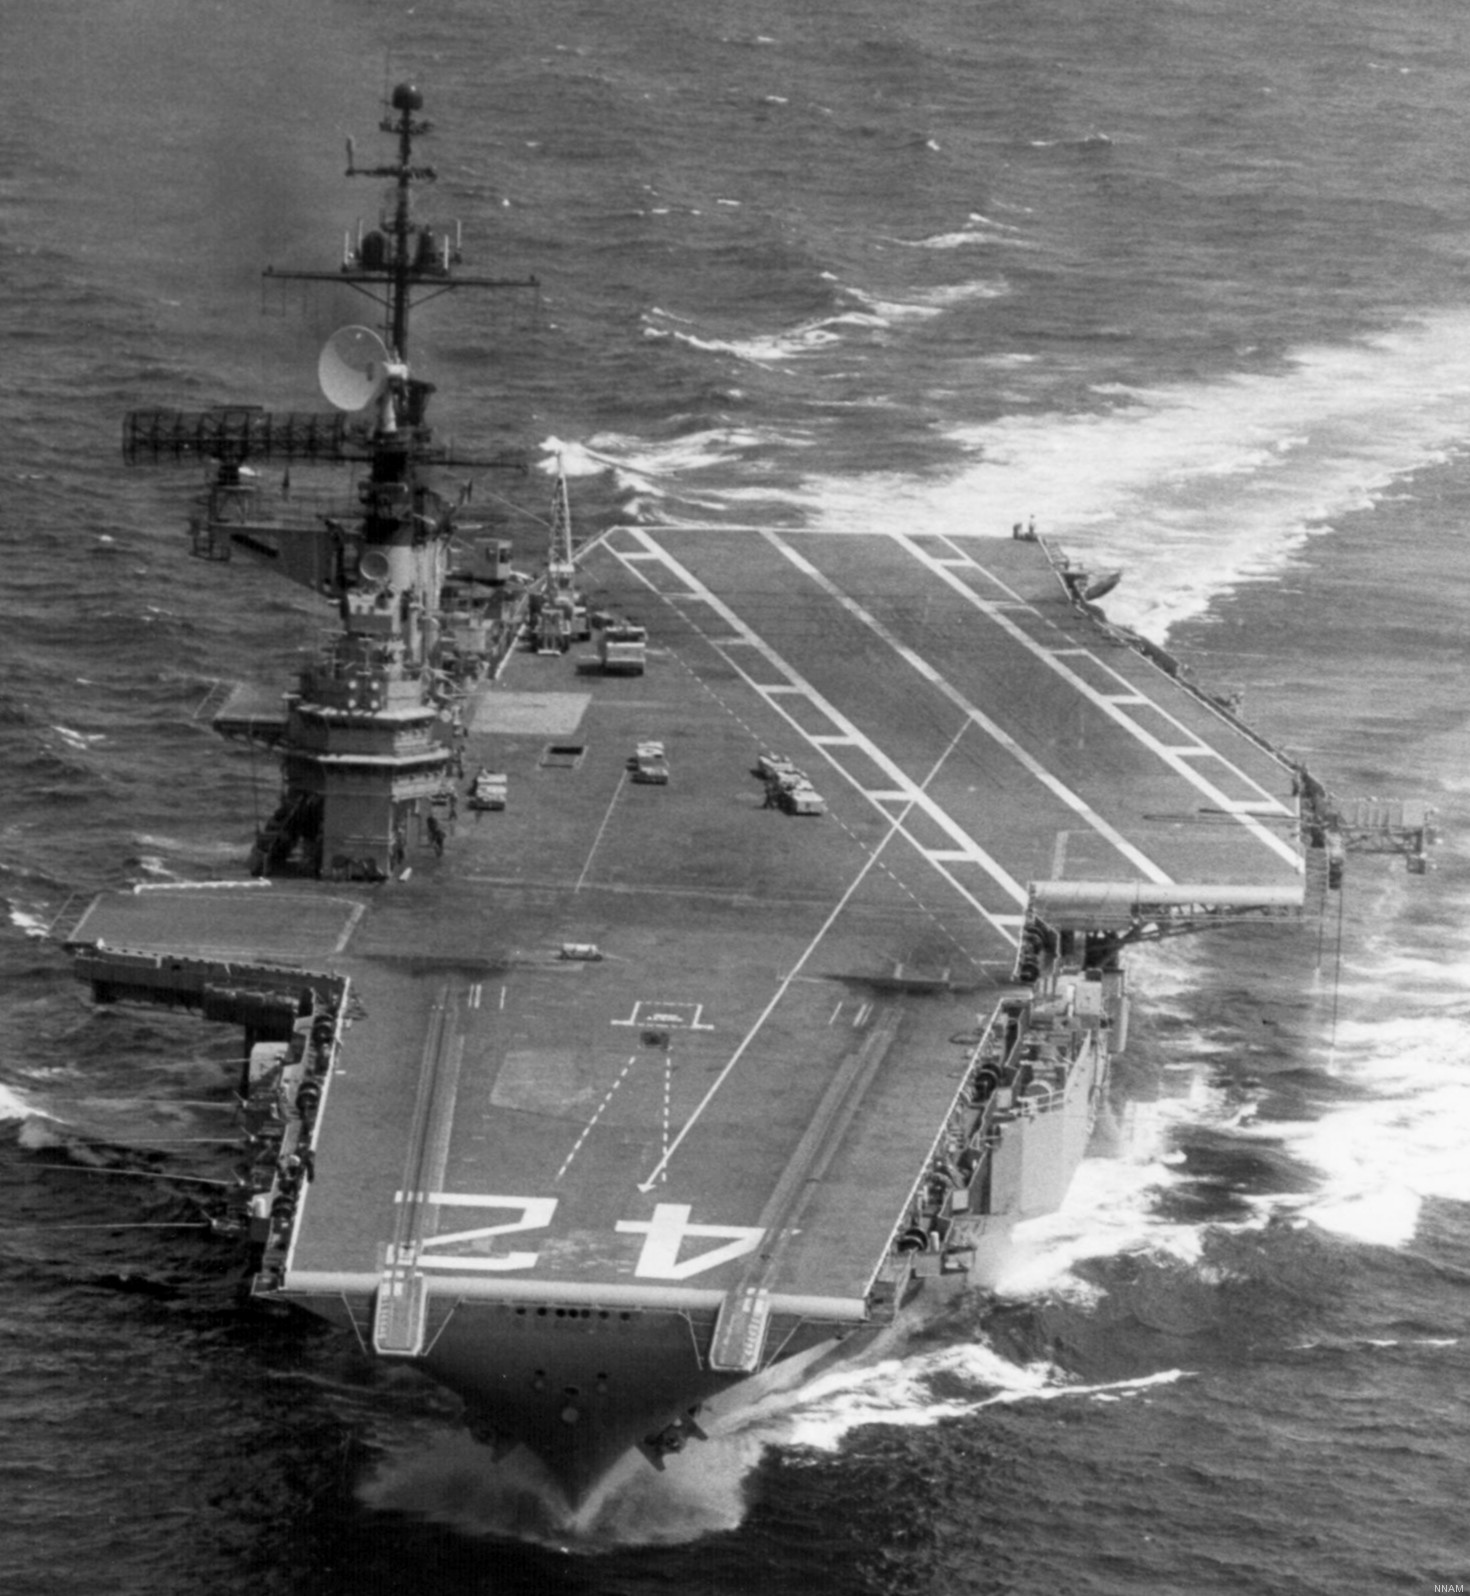 cva-42 uss franklin d. roosevelt midway class aircraft carrier 29